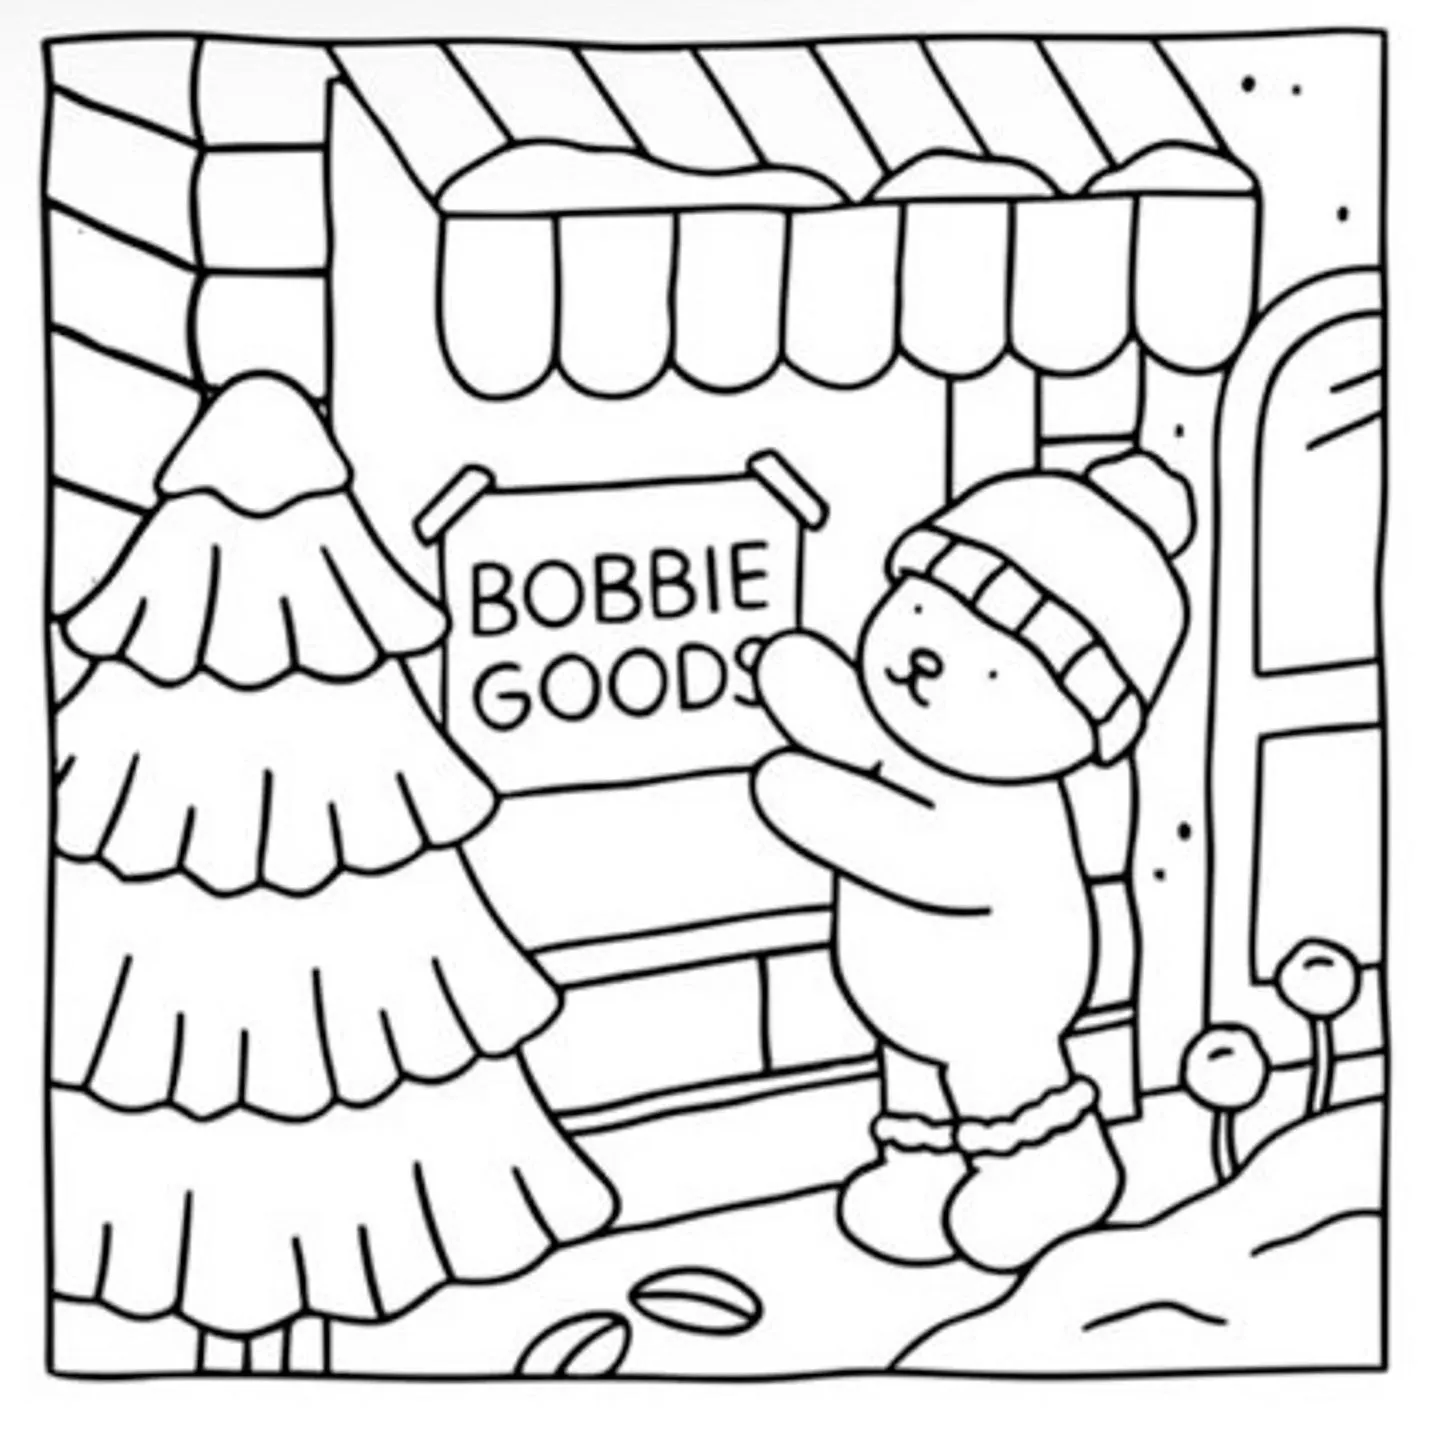 Bobbie Goods 3